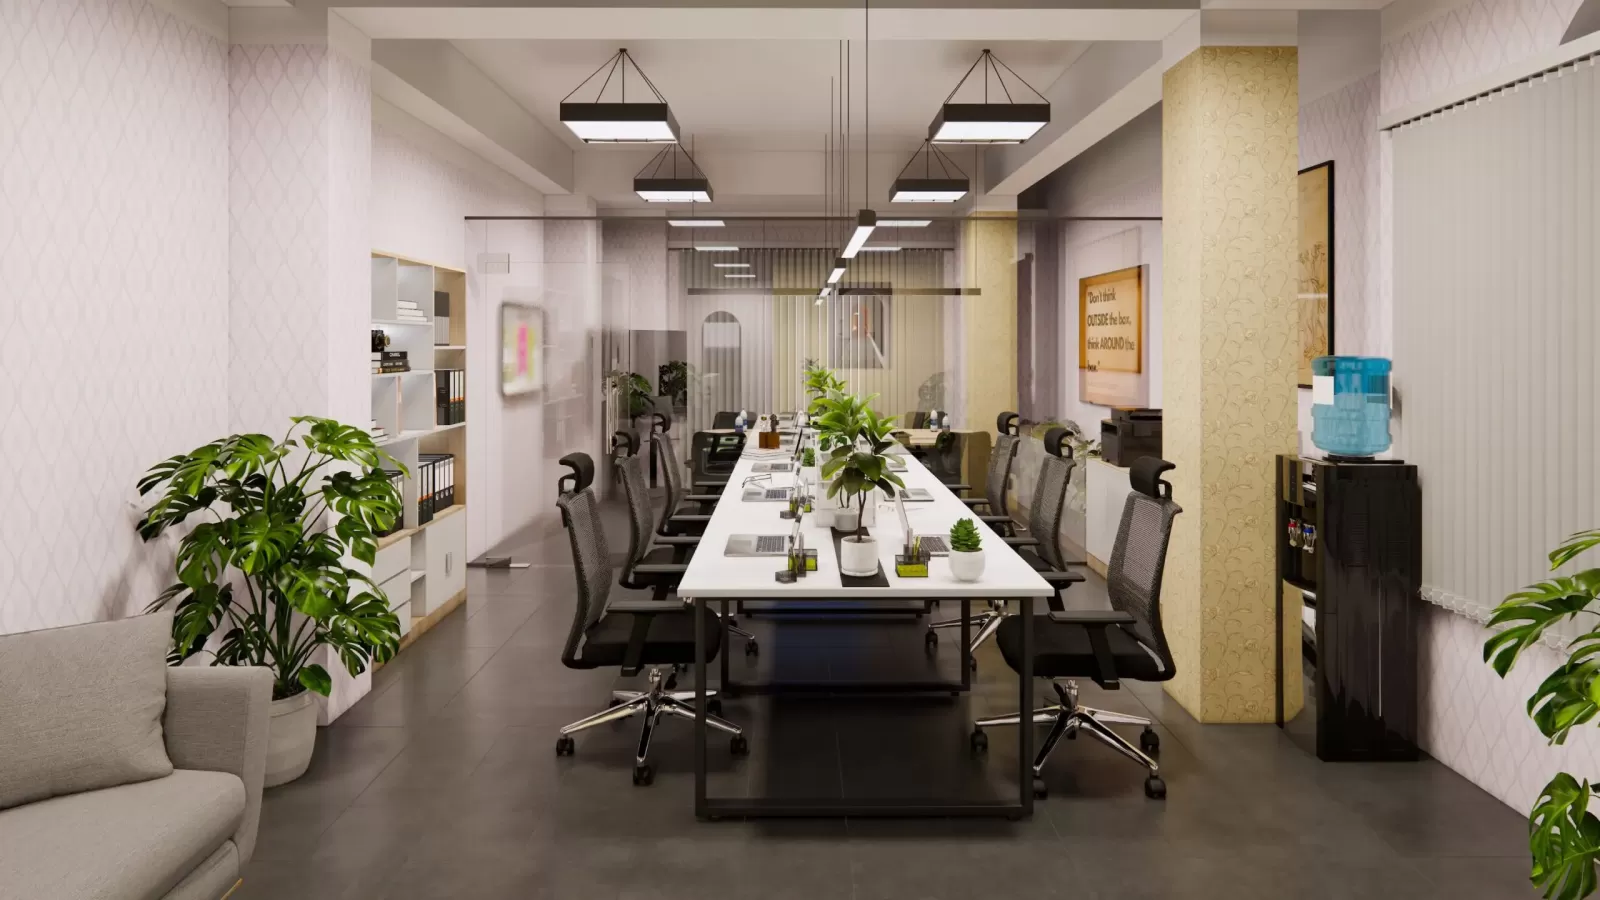 8 mẫu thiết kế nội thất văn phòng siêu đẹp năm 2021 ⋆ Nội Thất DTF